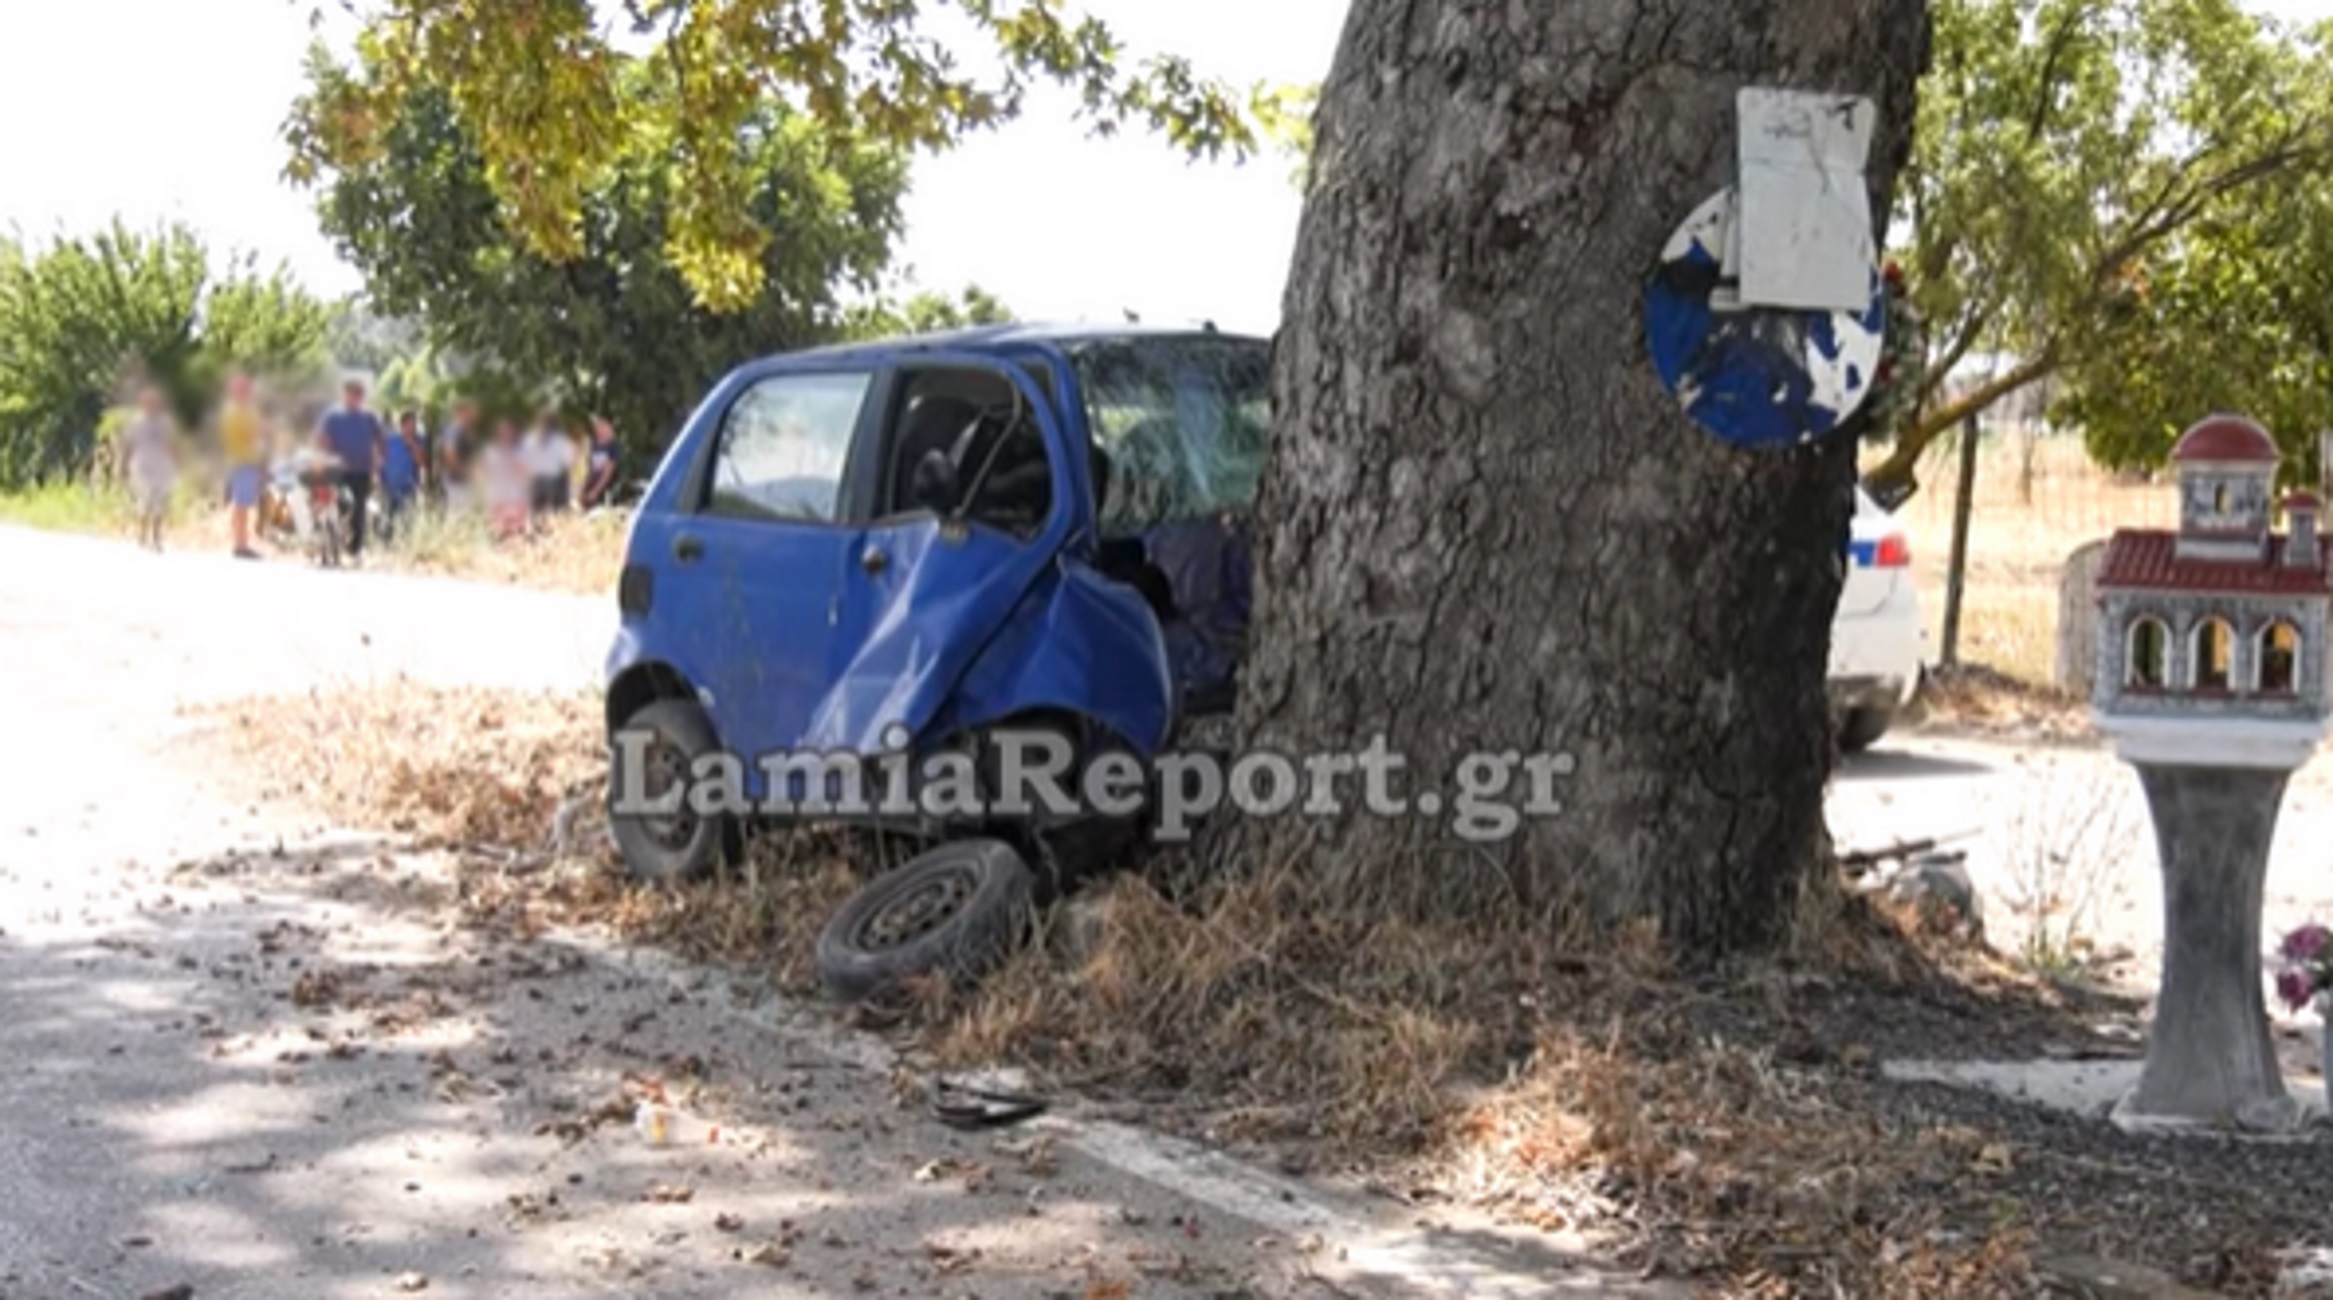 Βοιωτία: Έπεσε σε δέντρο στη μέση του δρόμου και σκοτώθηκε – Εικόνες μετά το τροχαίο